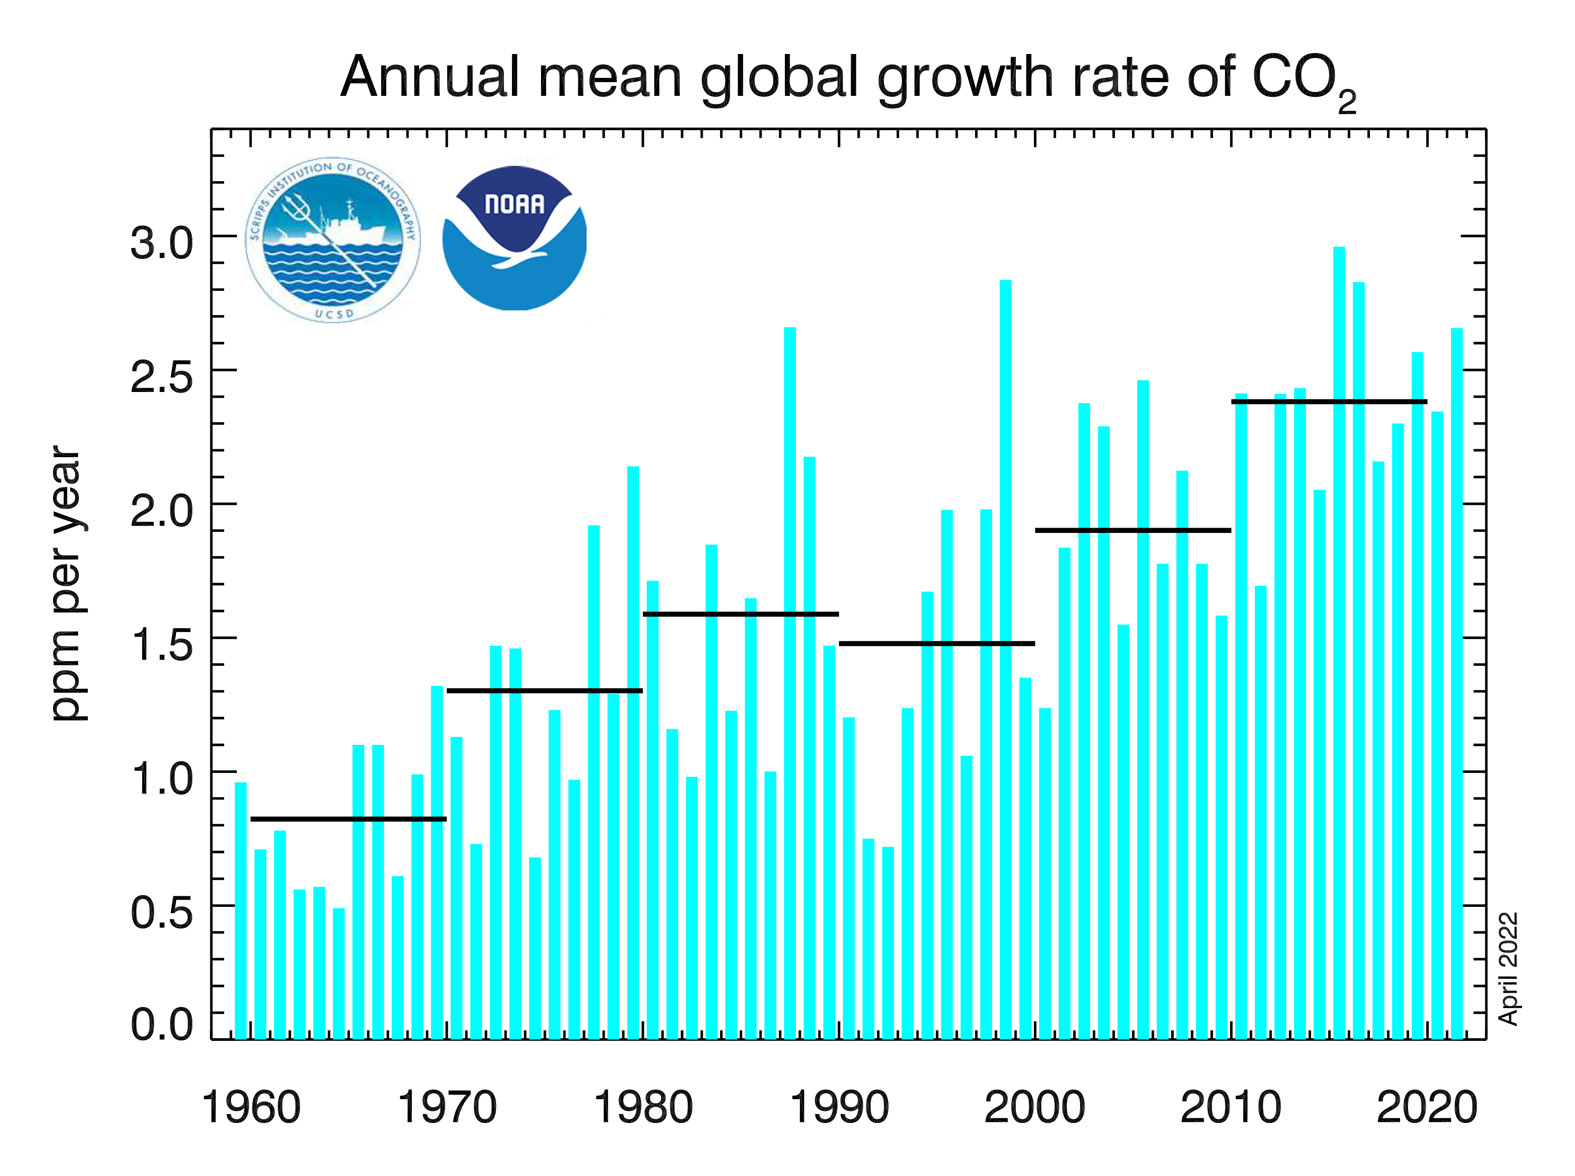 Średnie roczne tempo wzrostu koncentracji CO2 od 1959 roku. Linie poziome wskazują średnie dziesięcioletnie tempo wzrostu.